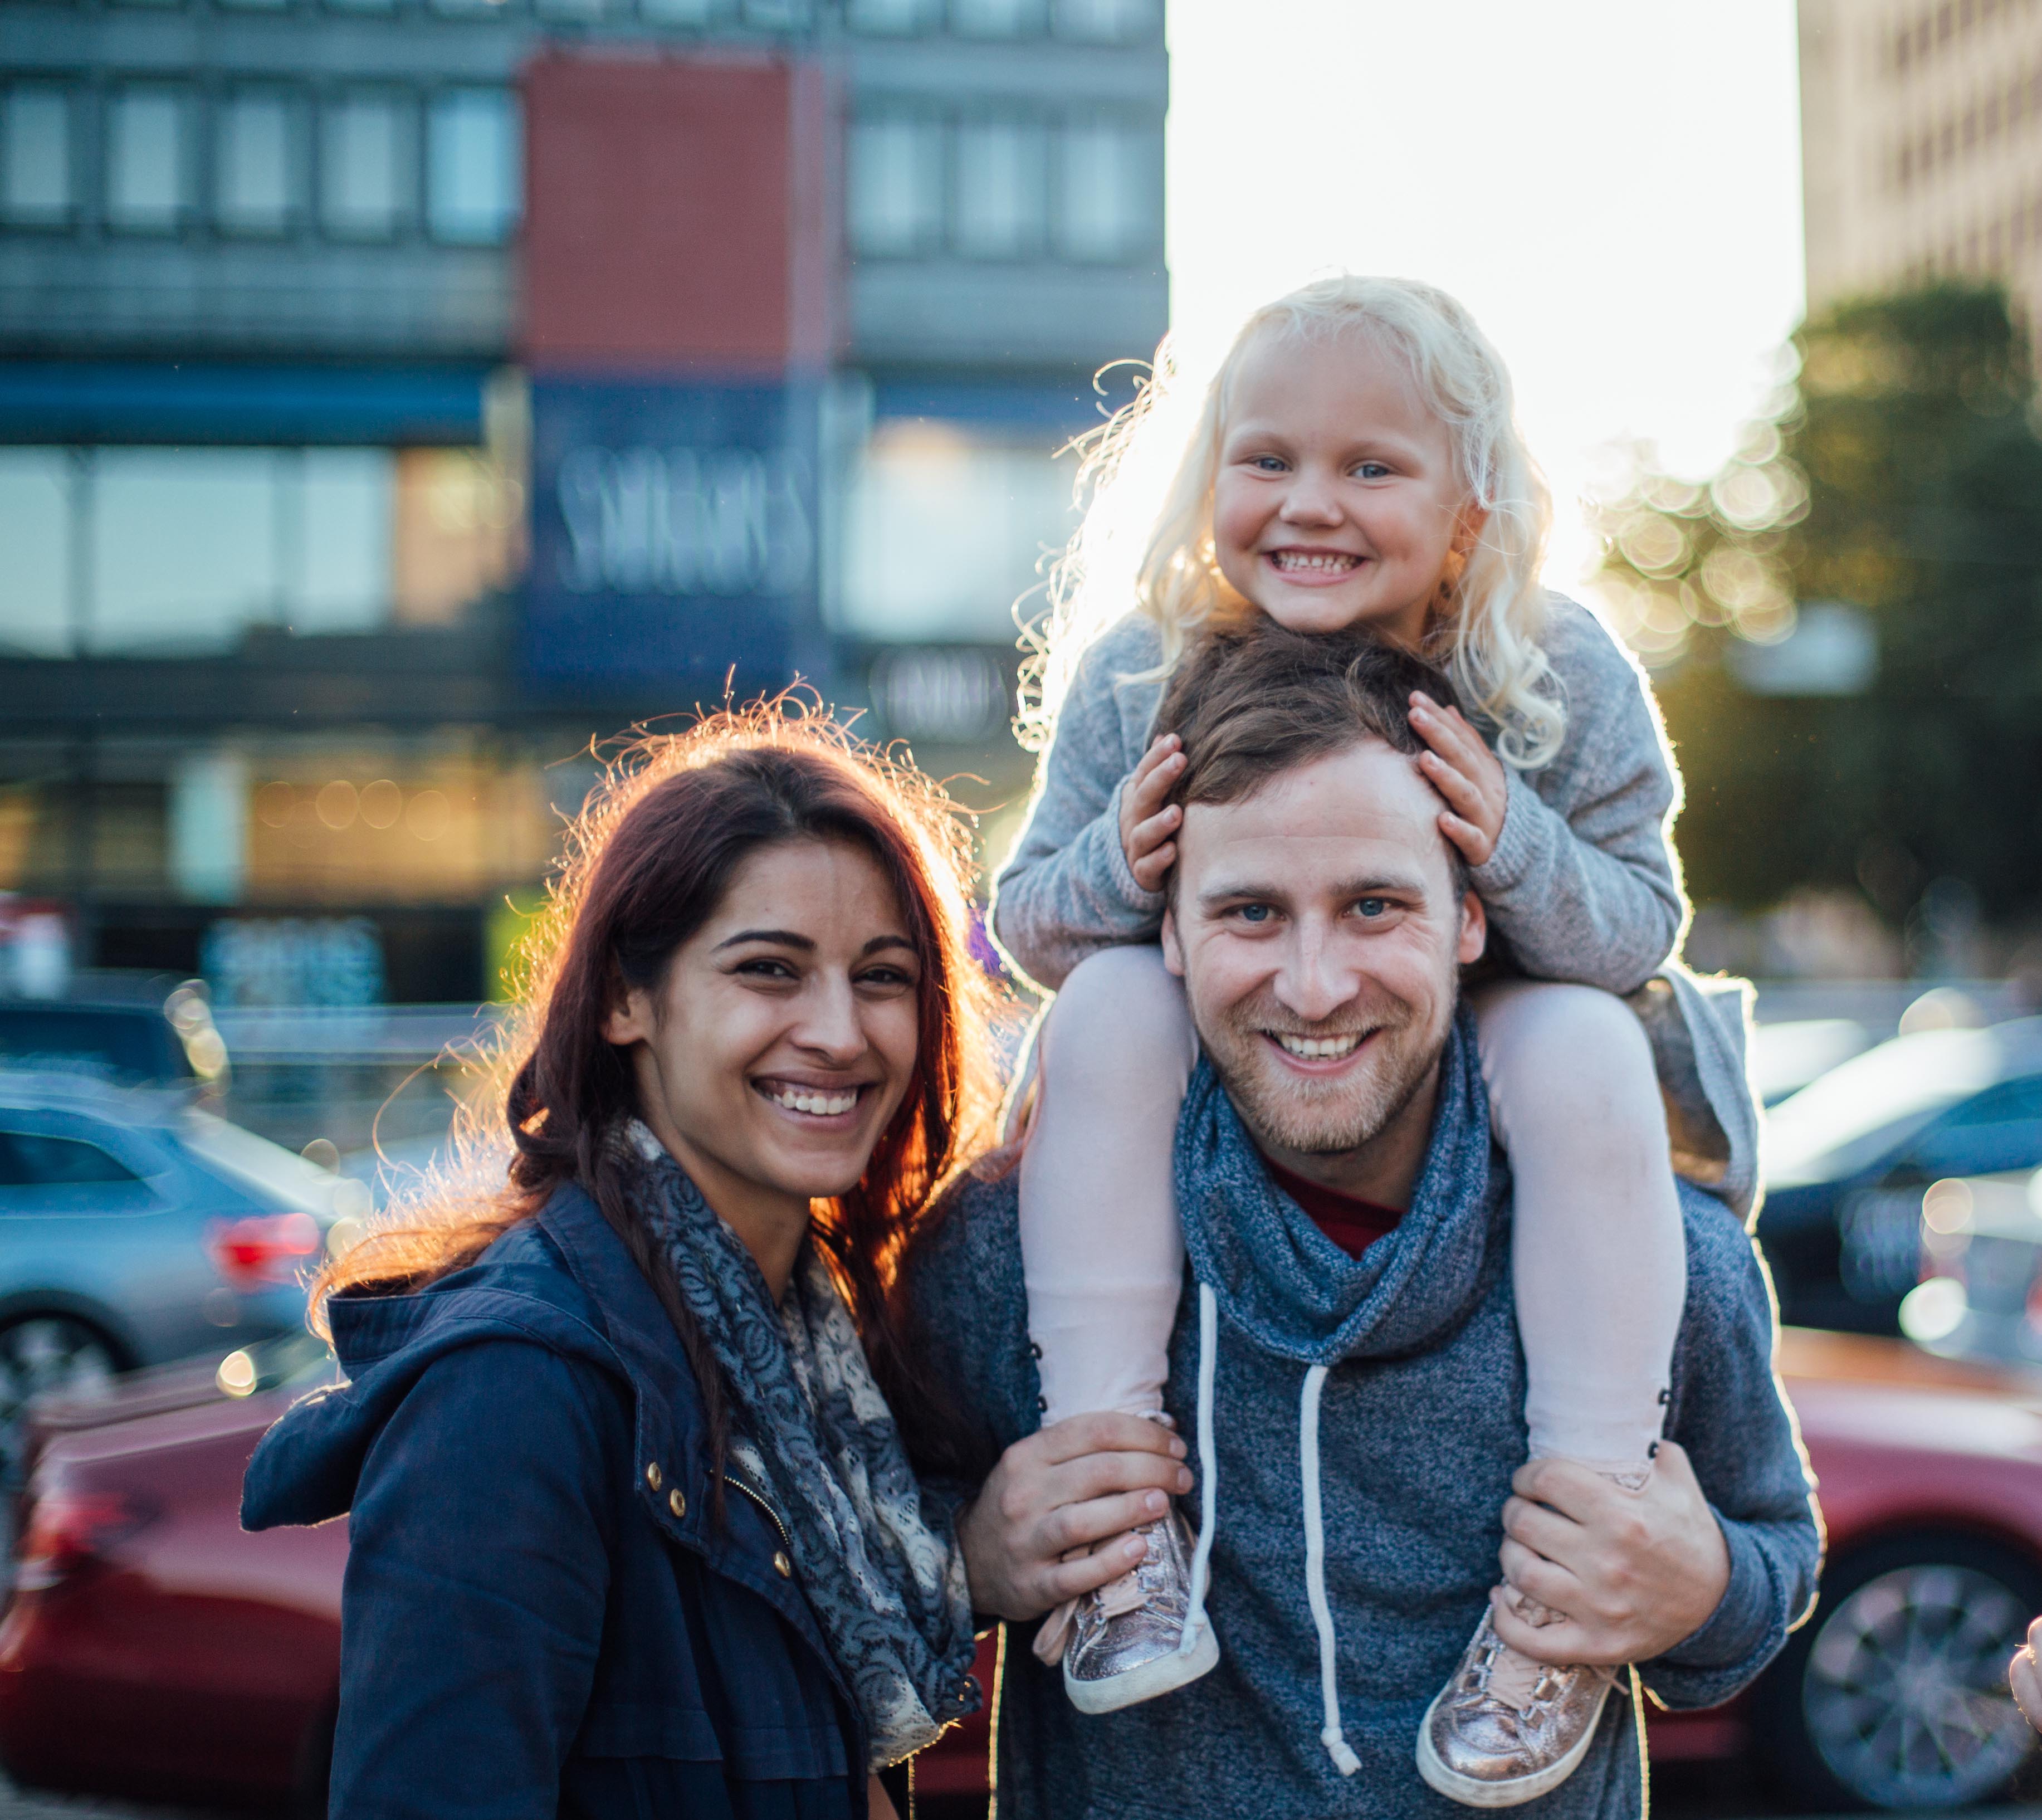 Family in Helsinki.